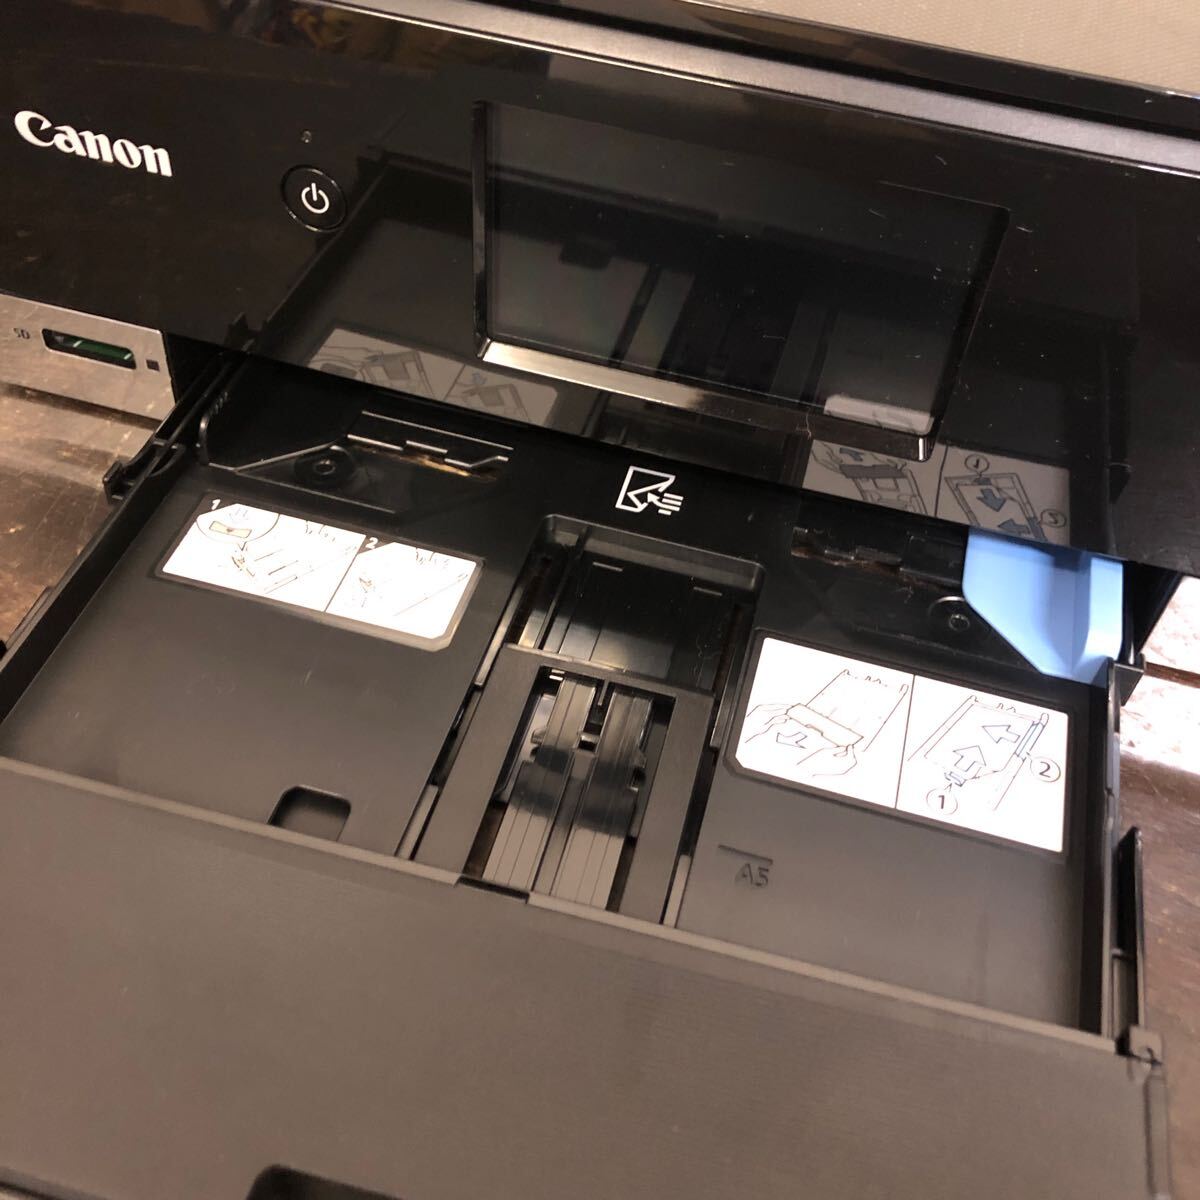 Canon インクジェット複合機 TS8330 総印刷枚数25枚 若干目詰まり プリンター CD/DVD印刷用トレイ 説明書付き 中古品_画像4